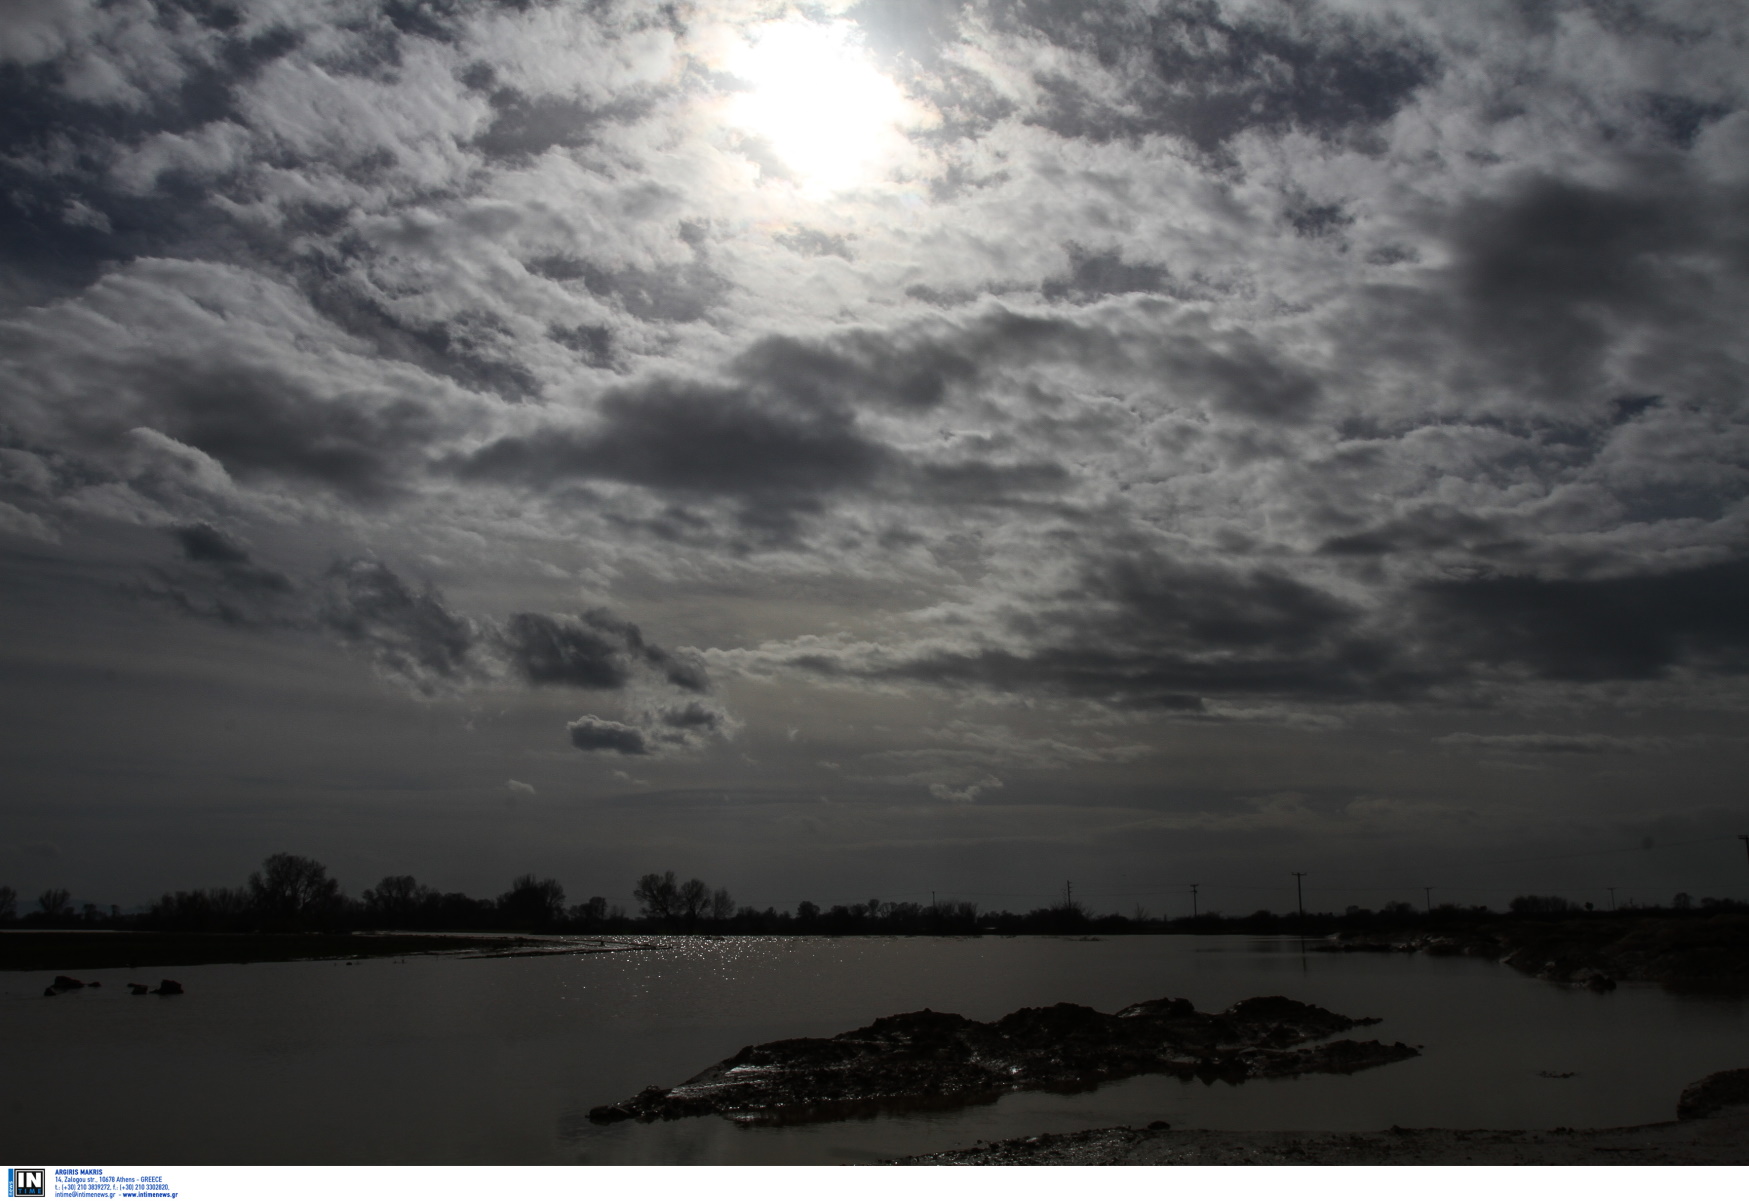 Υπουργείο Περιβάλλοντος: Οι ενέργειες στον ποταμό Λούρο μετά τη διακοπή ροής και τα νεκρά ψάρια